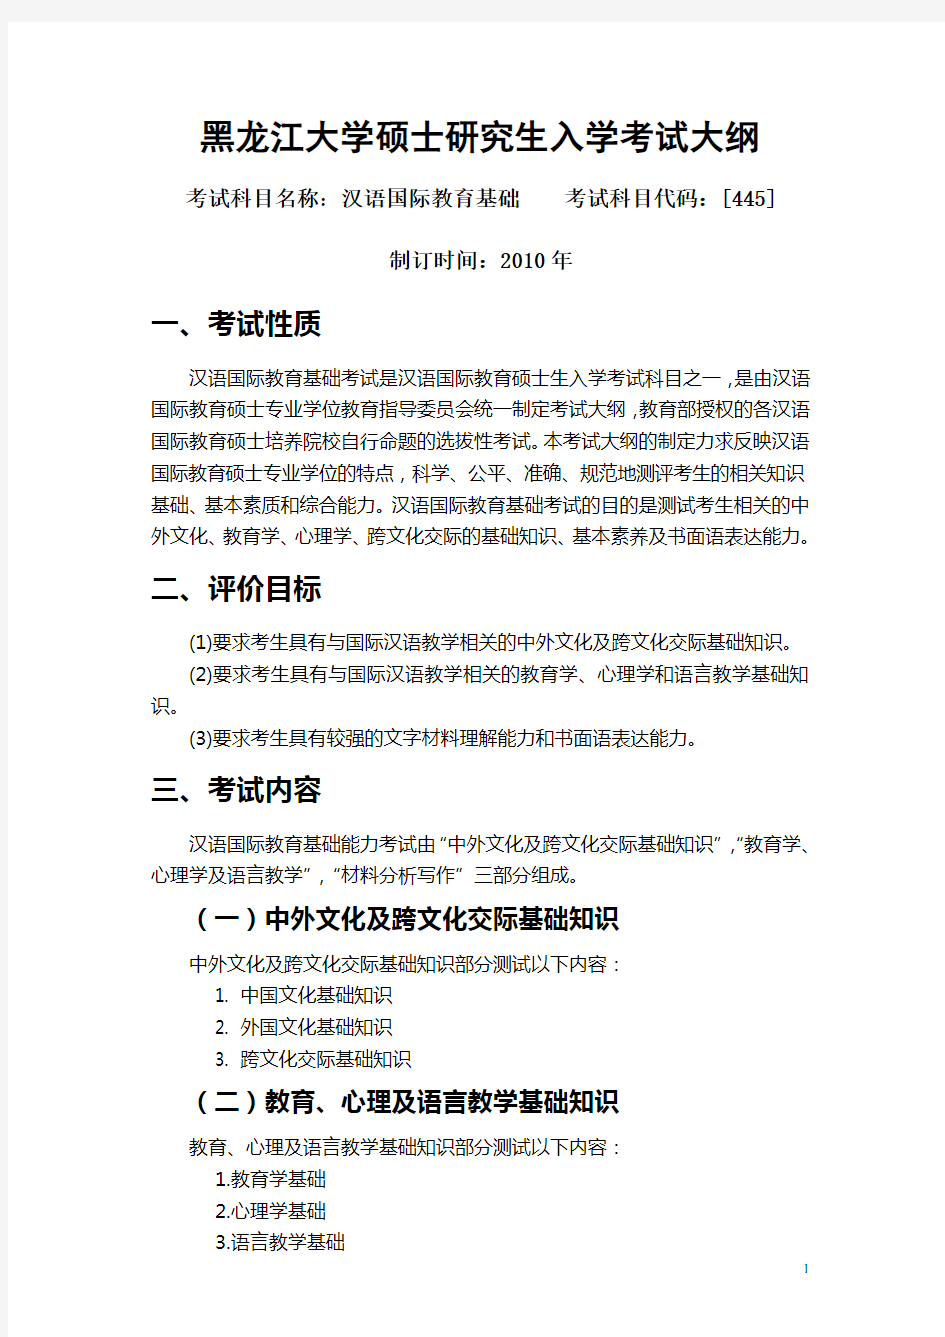 445汉语国际教育基础考试大纲